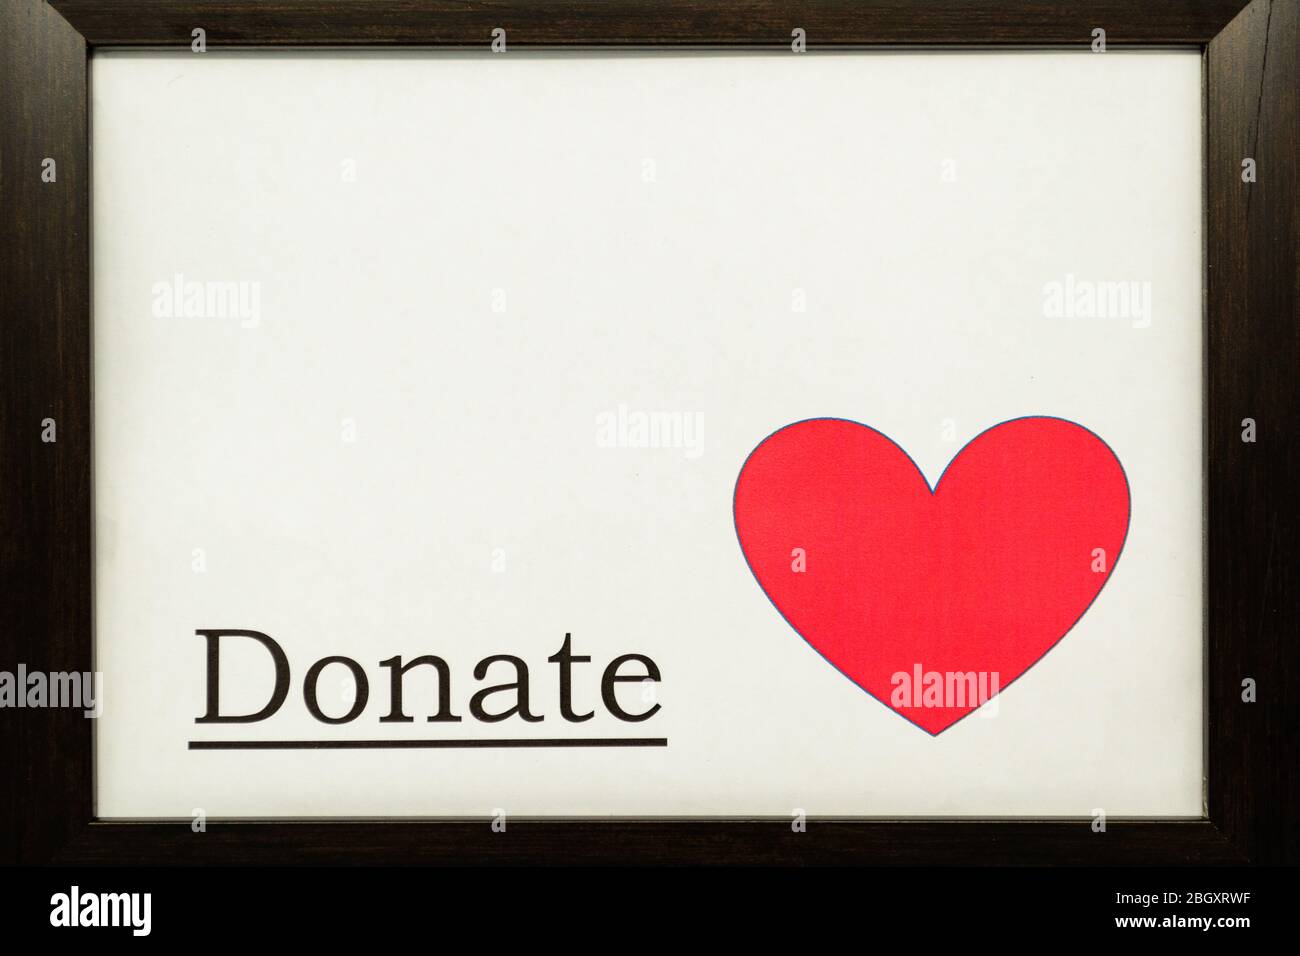 Das Wort 'Donate' auf weißem Hintergrund neben einem roten Herz Stockfoto